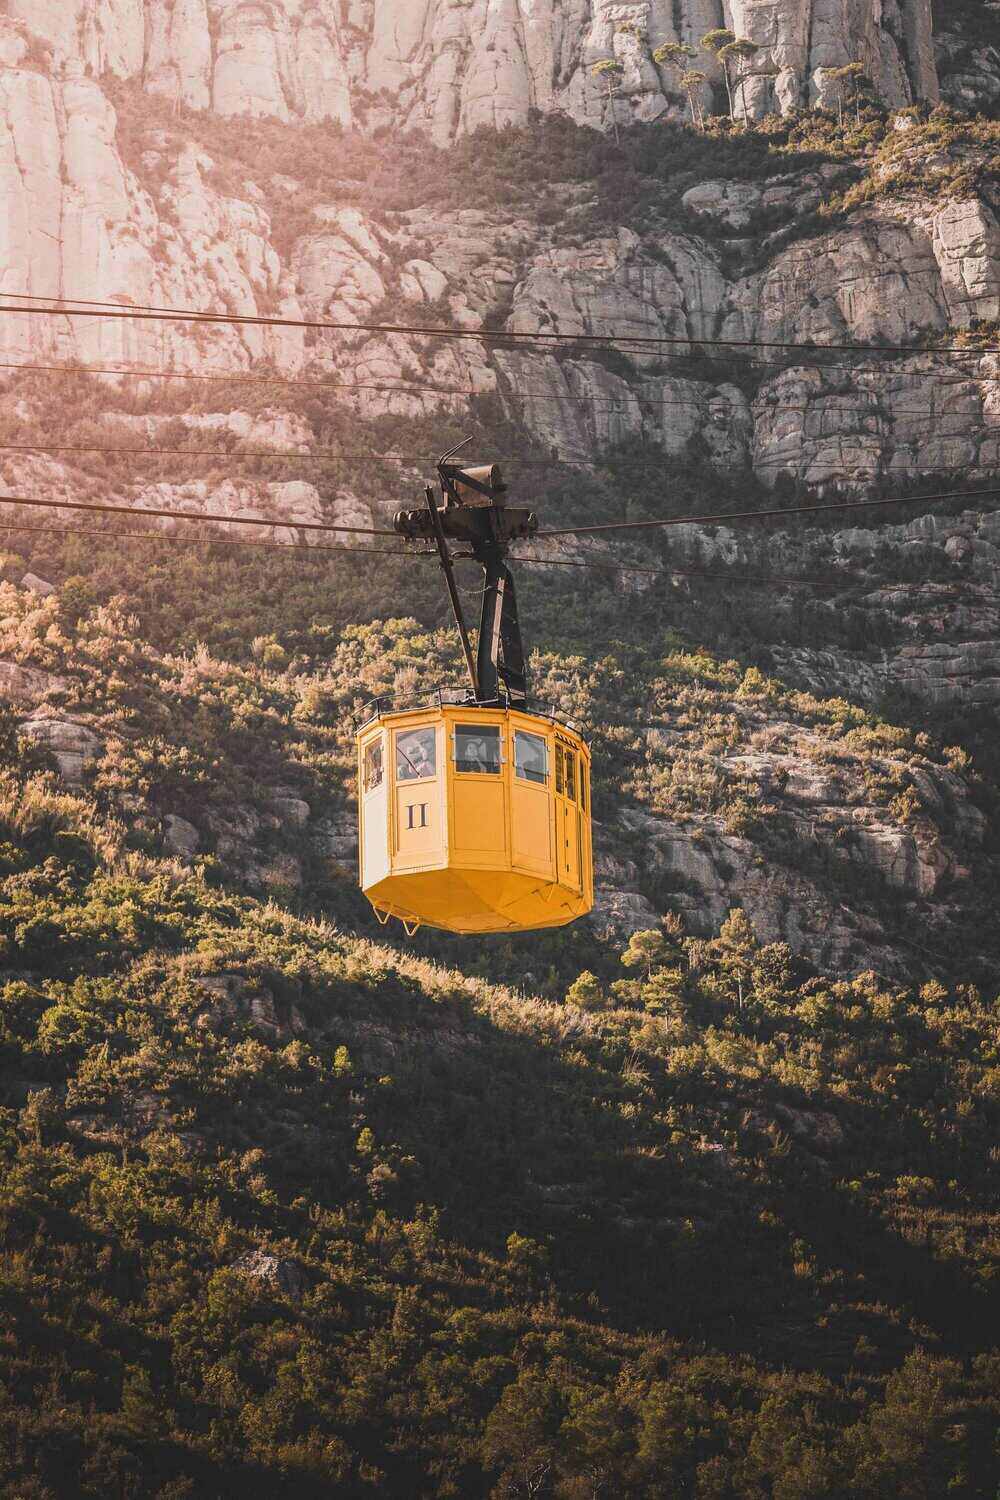 Montserrat Cable Car